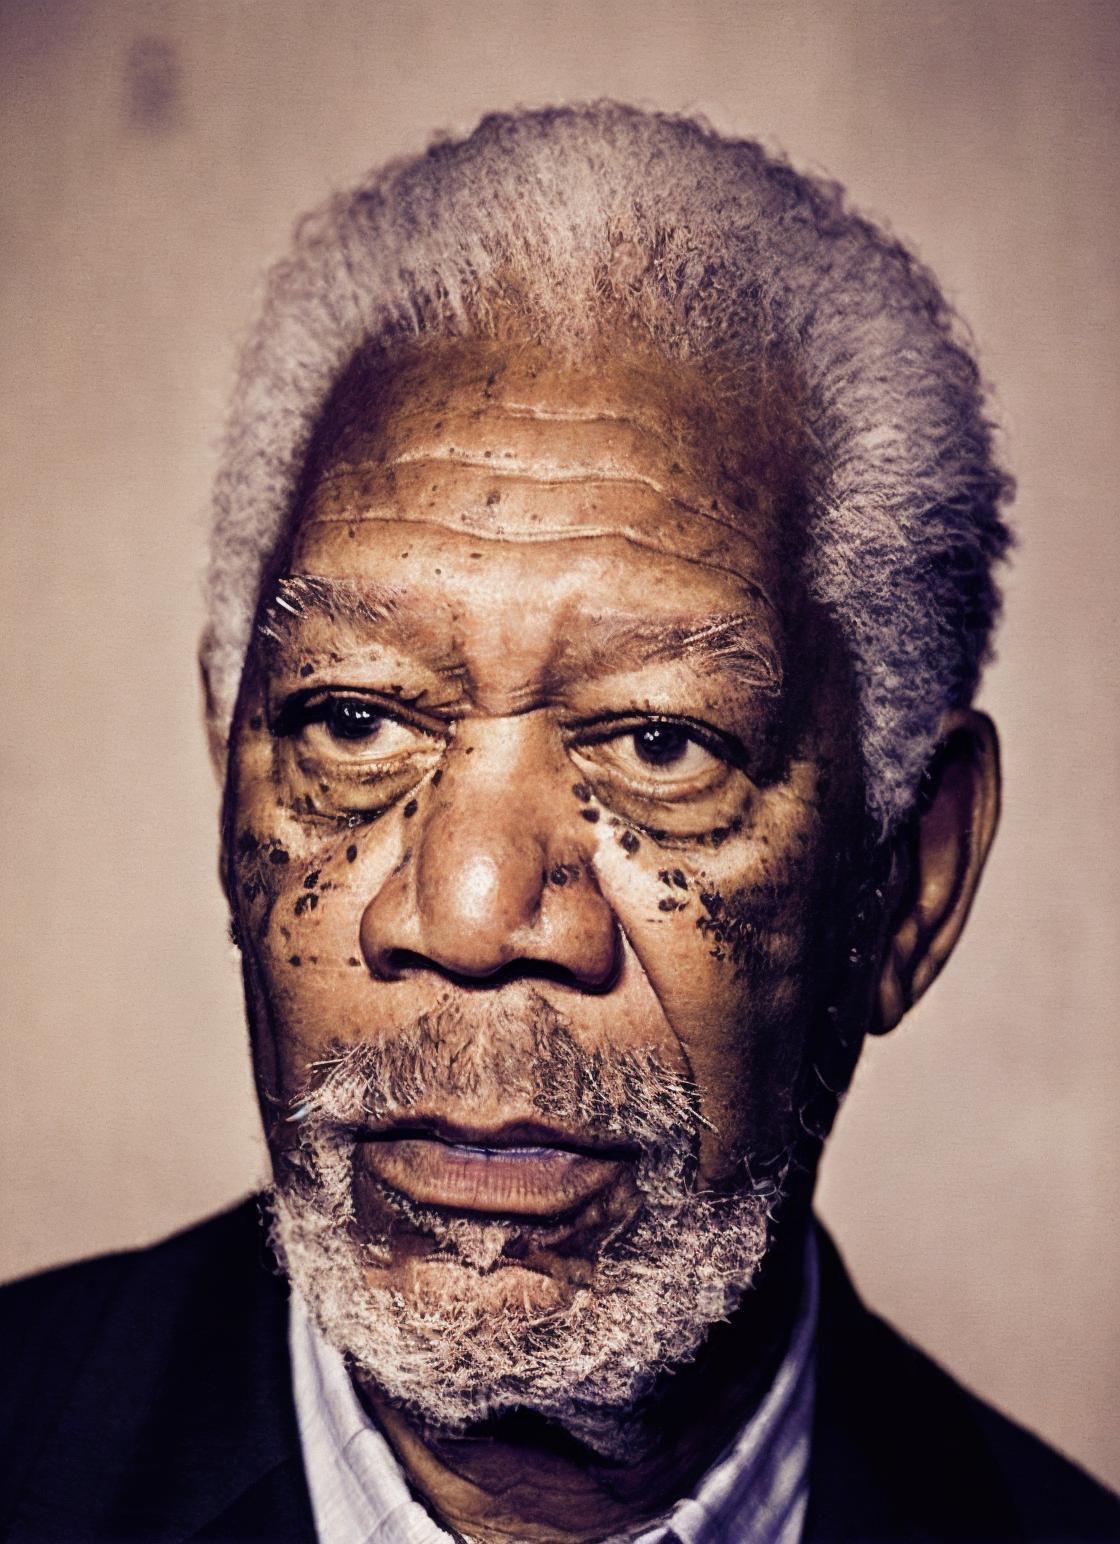 Morgan Freeman image by malcolmrey